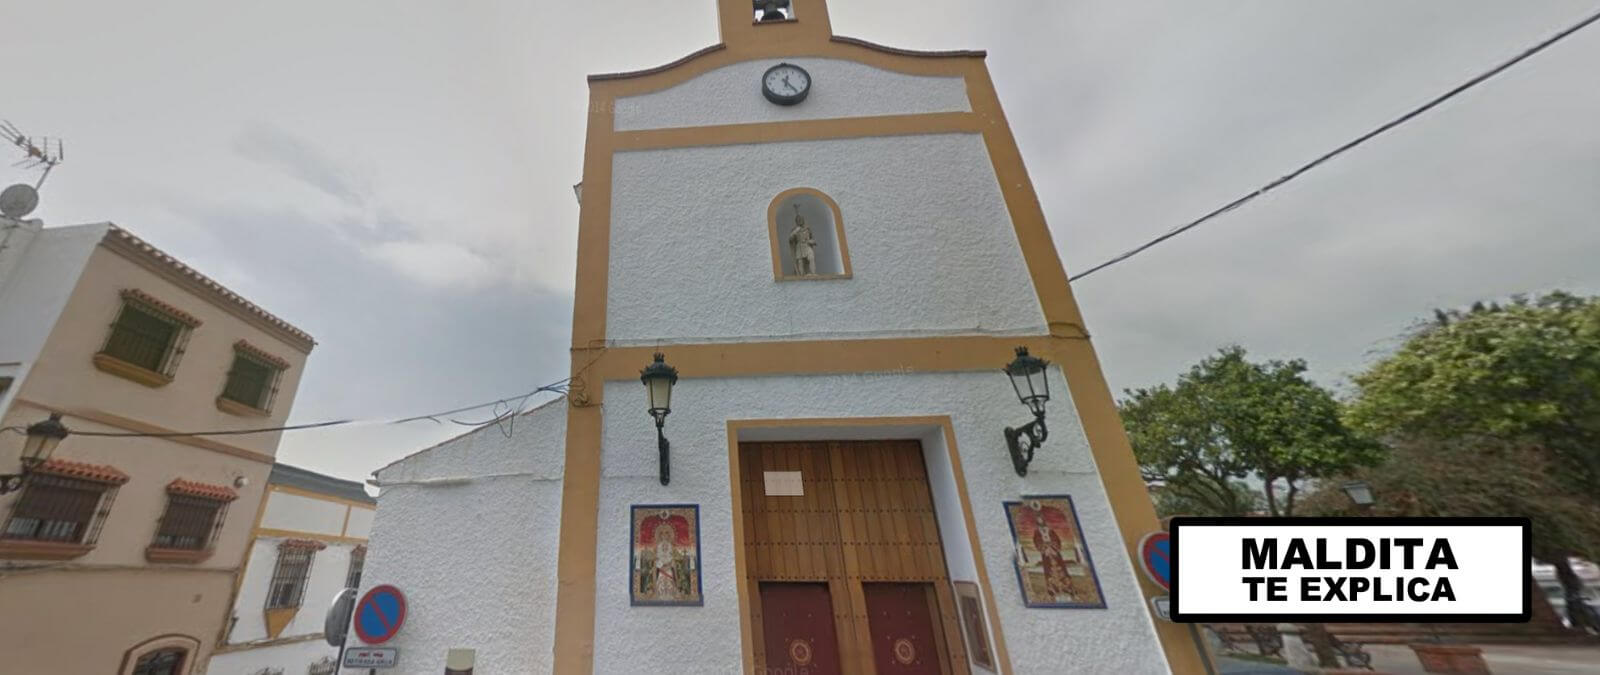 Preguntas y respuestas sobre el ataque a dos iglesias en Algeciras el 25 de  enero ·  - Periodismo para que no te la cuelen